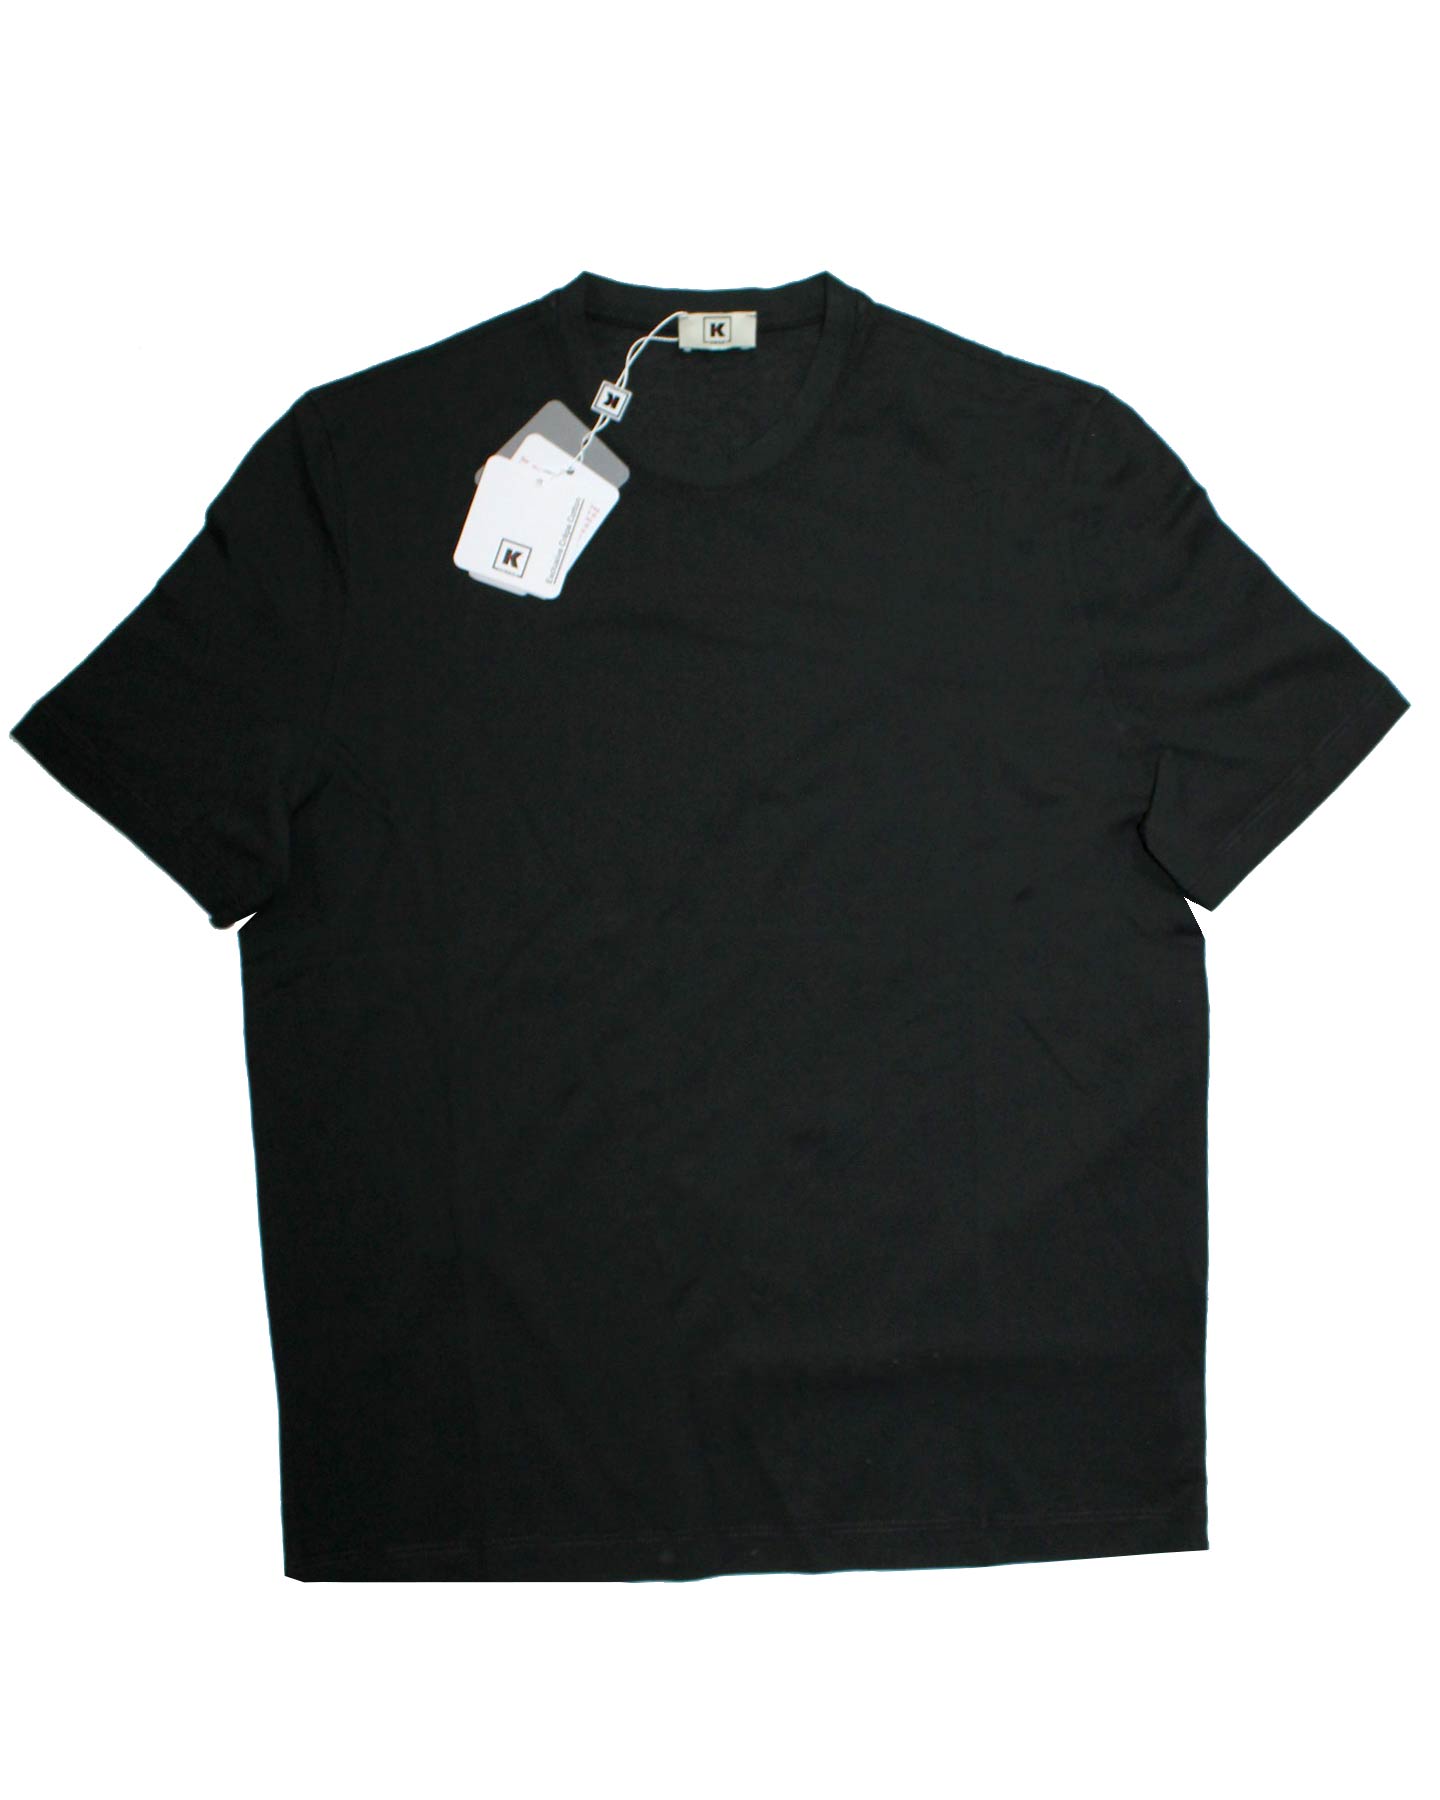 Kired Kiton T-Shirt Dark Brown Crêpe Cotton